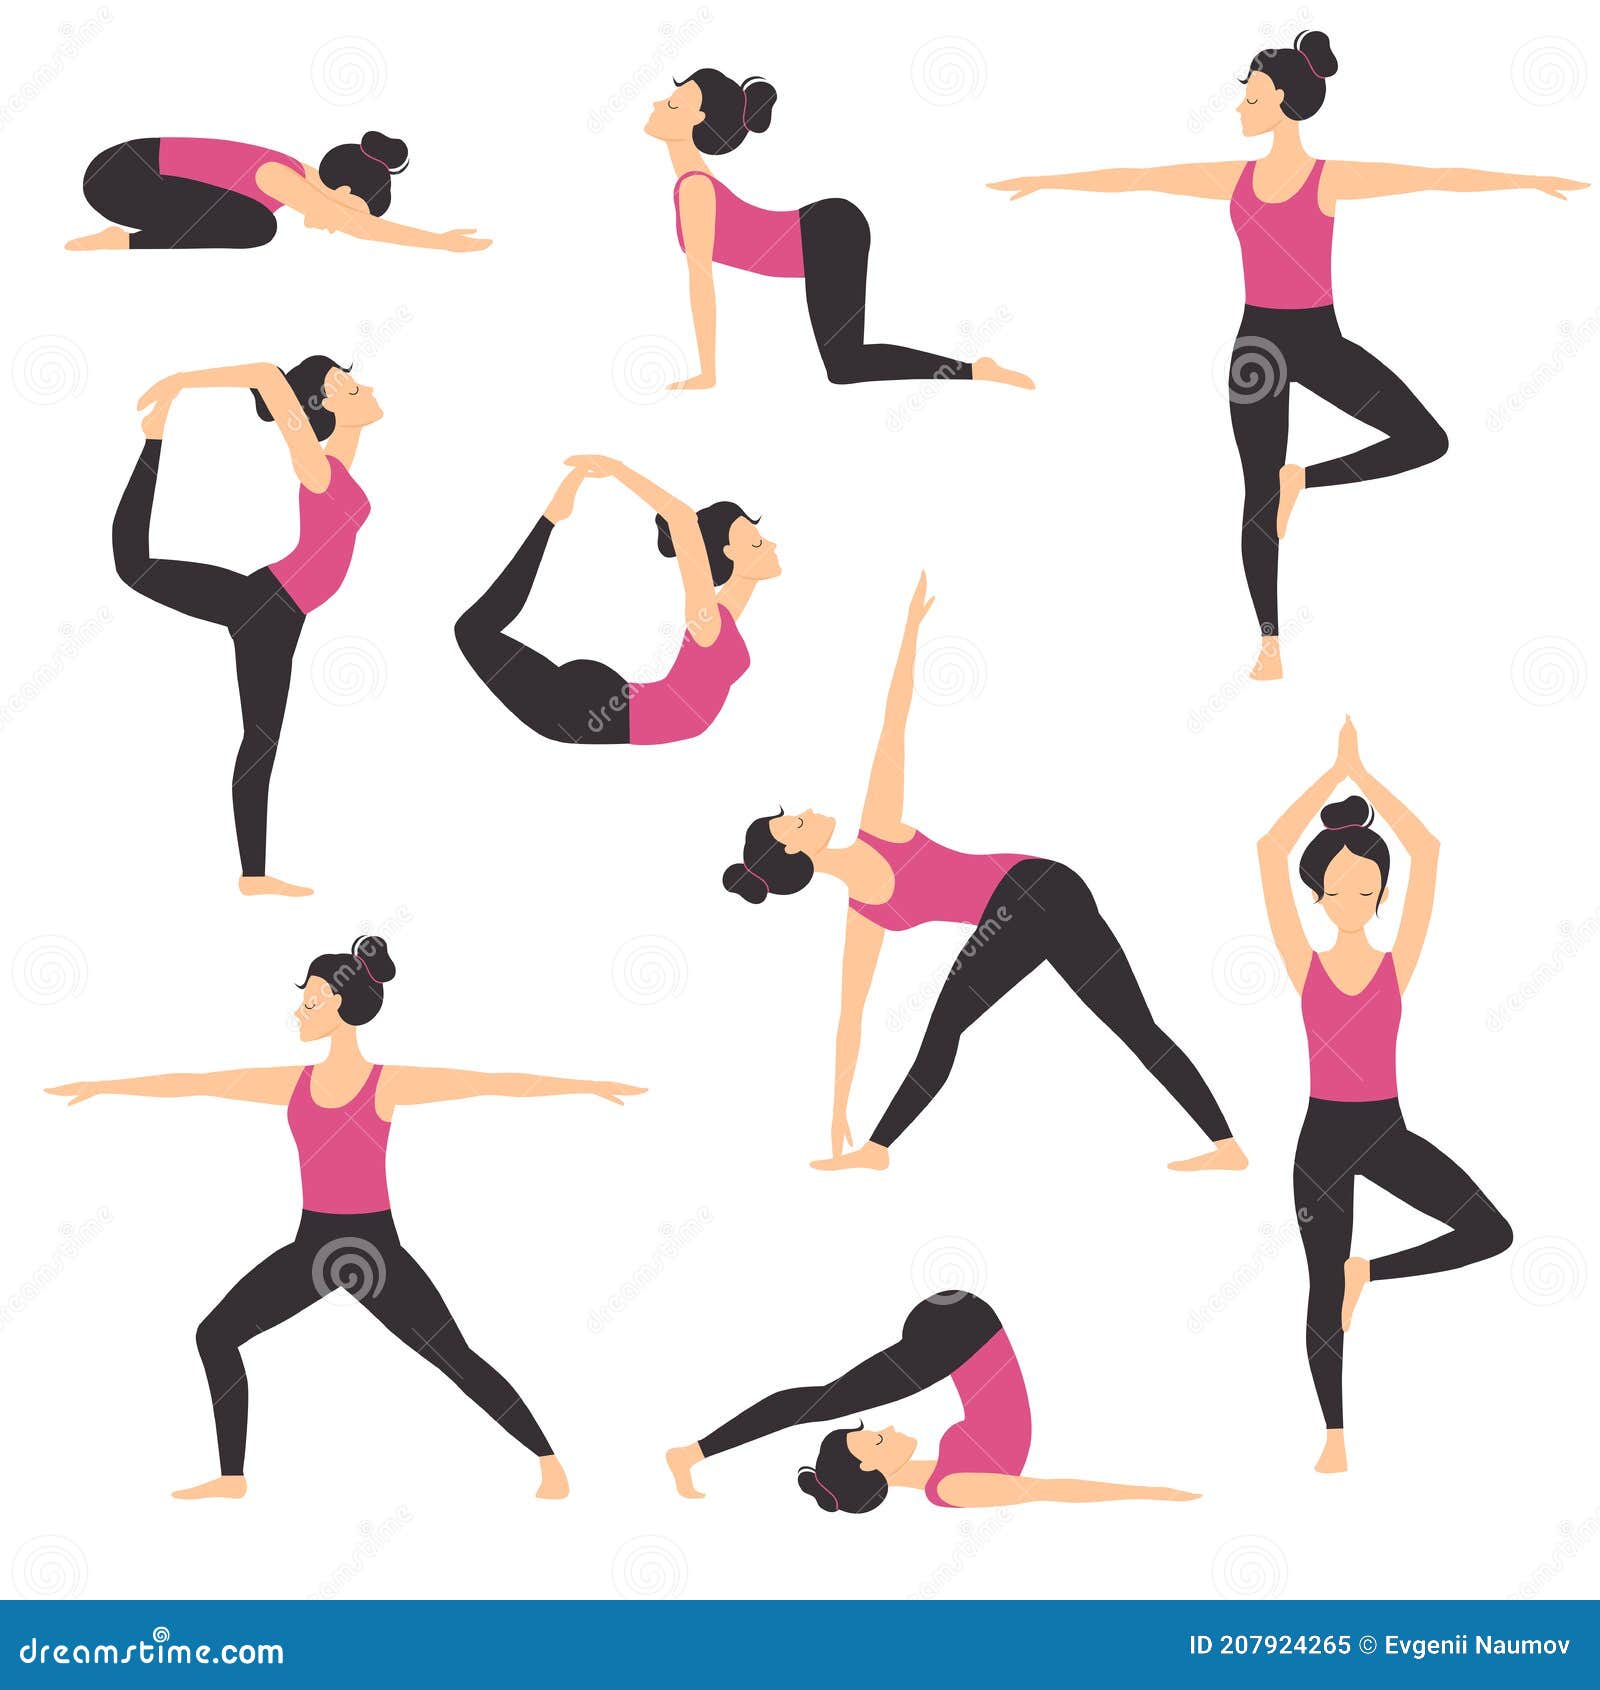 https://thumbs.dreamstime.com/z/chica-practicando-varias-posiciones-de-yoga-conjunto-delgado-deportivo-joven-mujer-entrenamiento-equilibrio-y-relajante-ejercicio-207924265.jpg